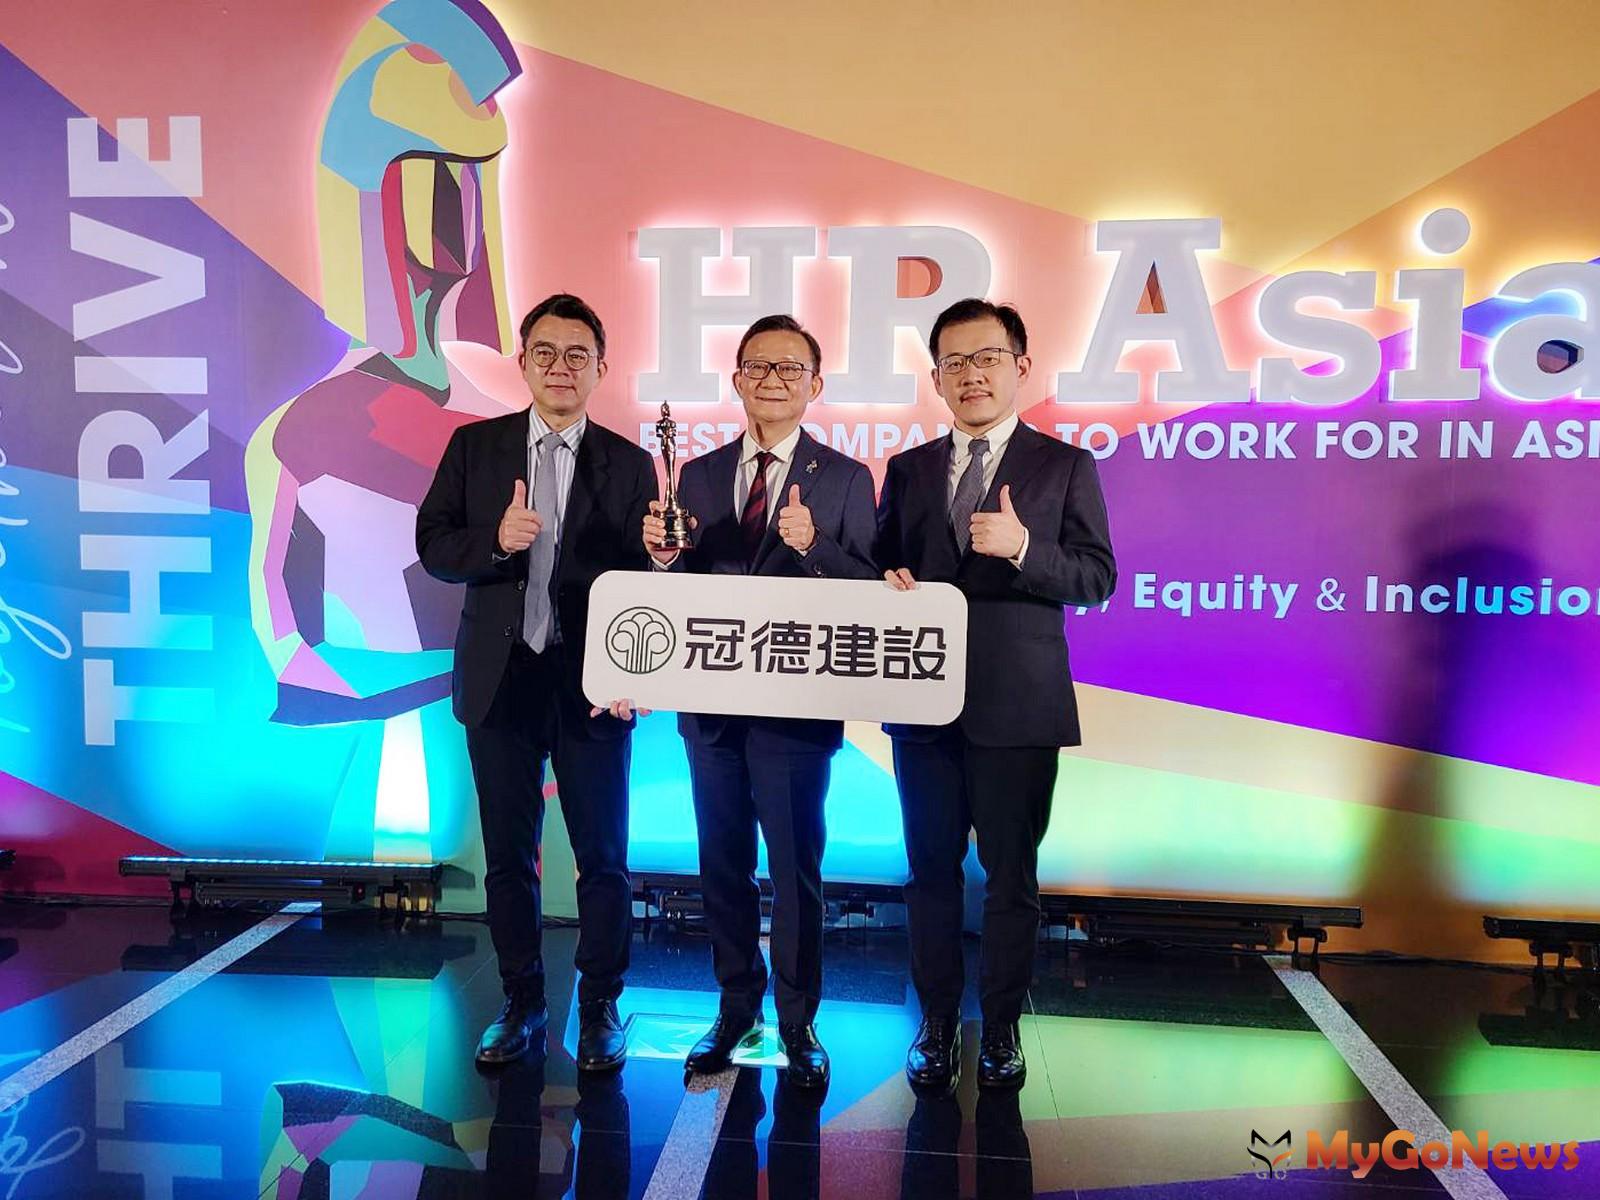 冠德建設連續兩年榮獲「亞洲最佳企業雇主獎」